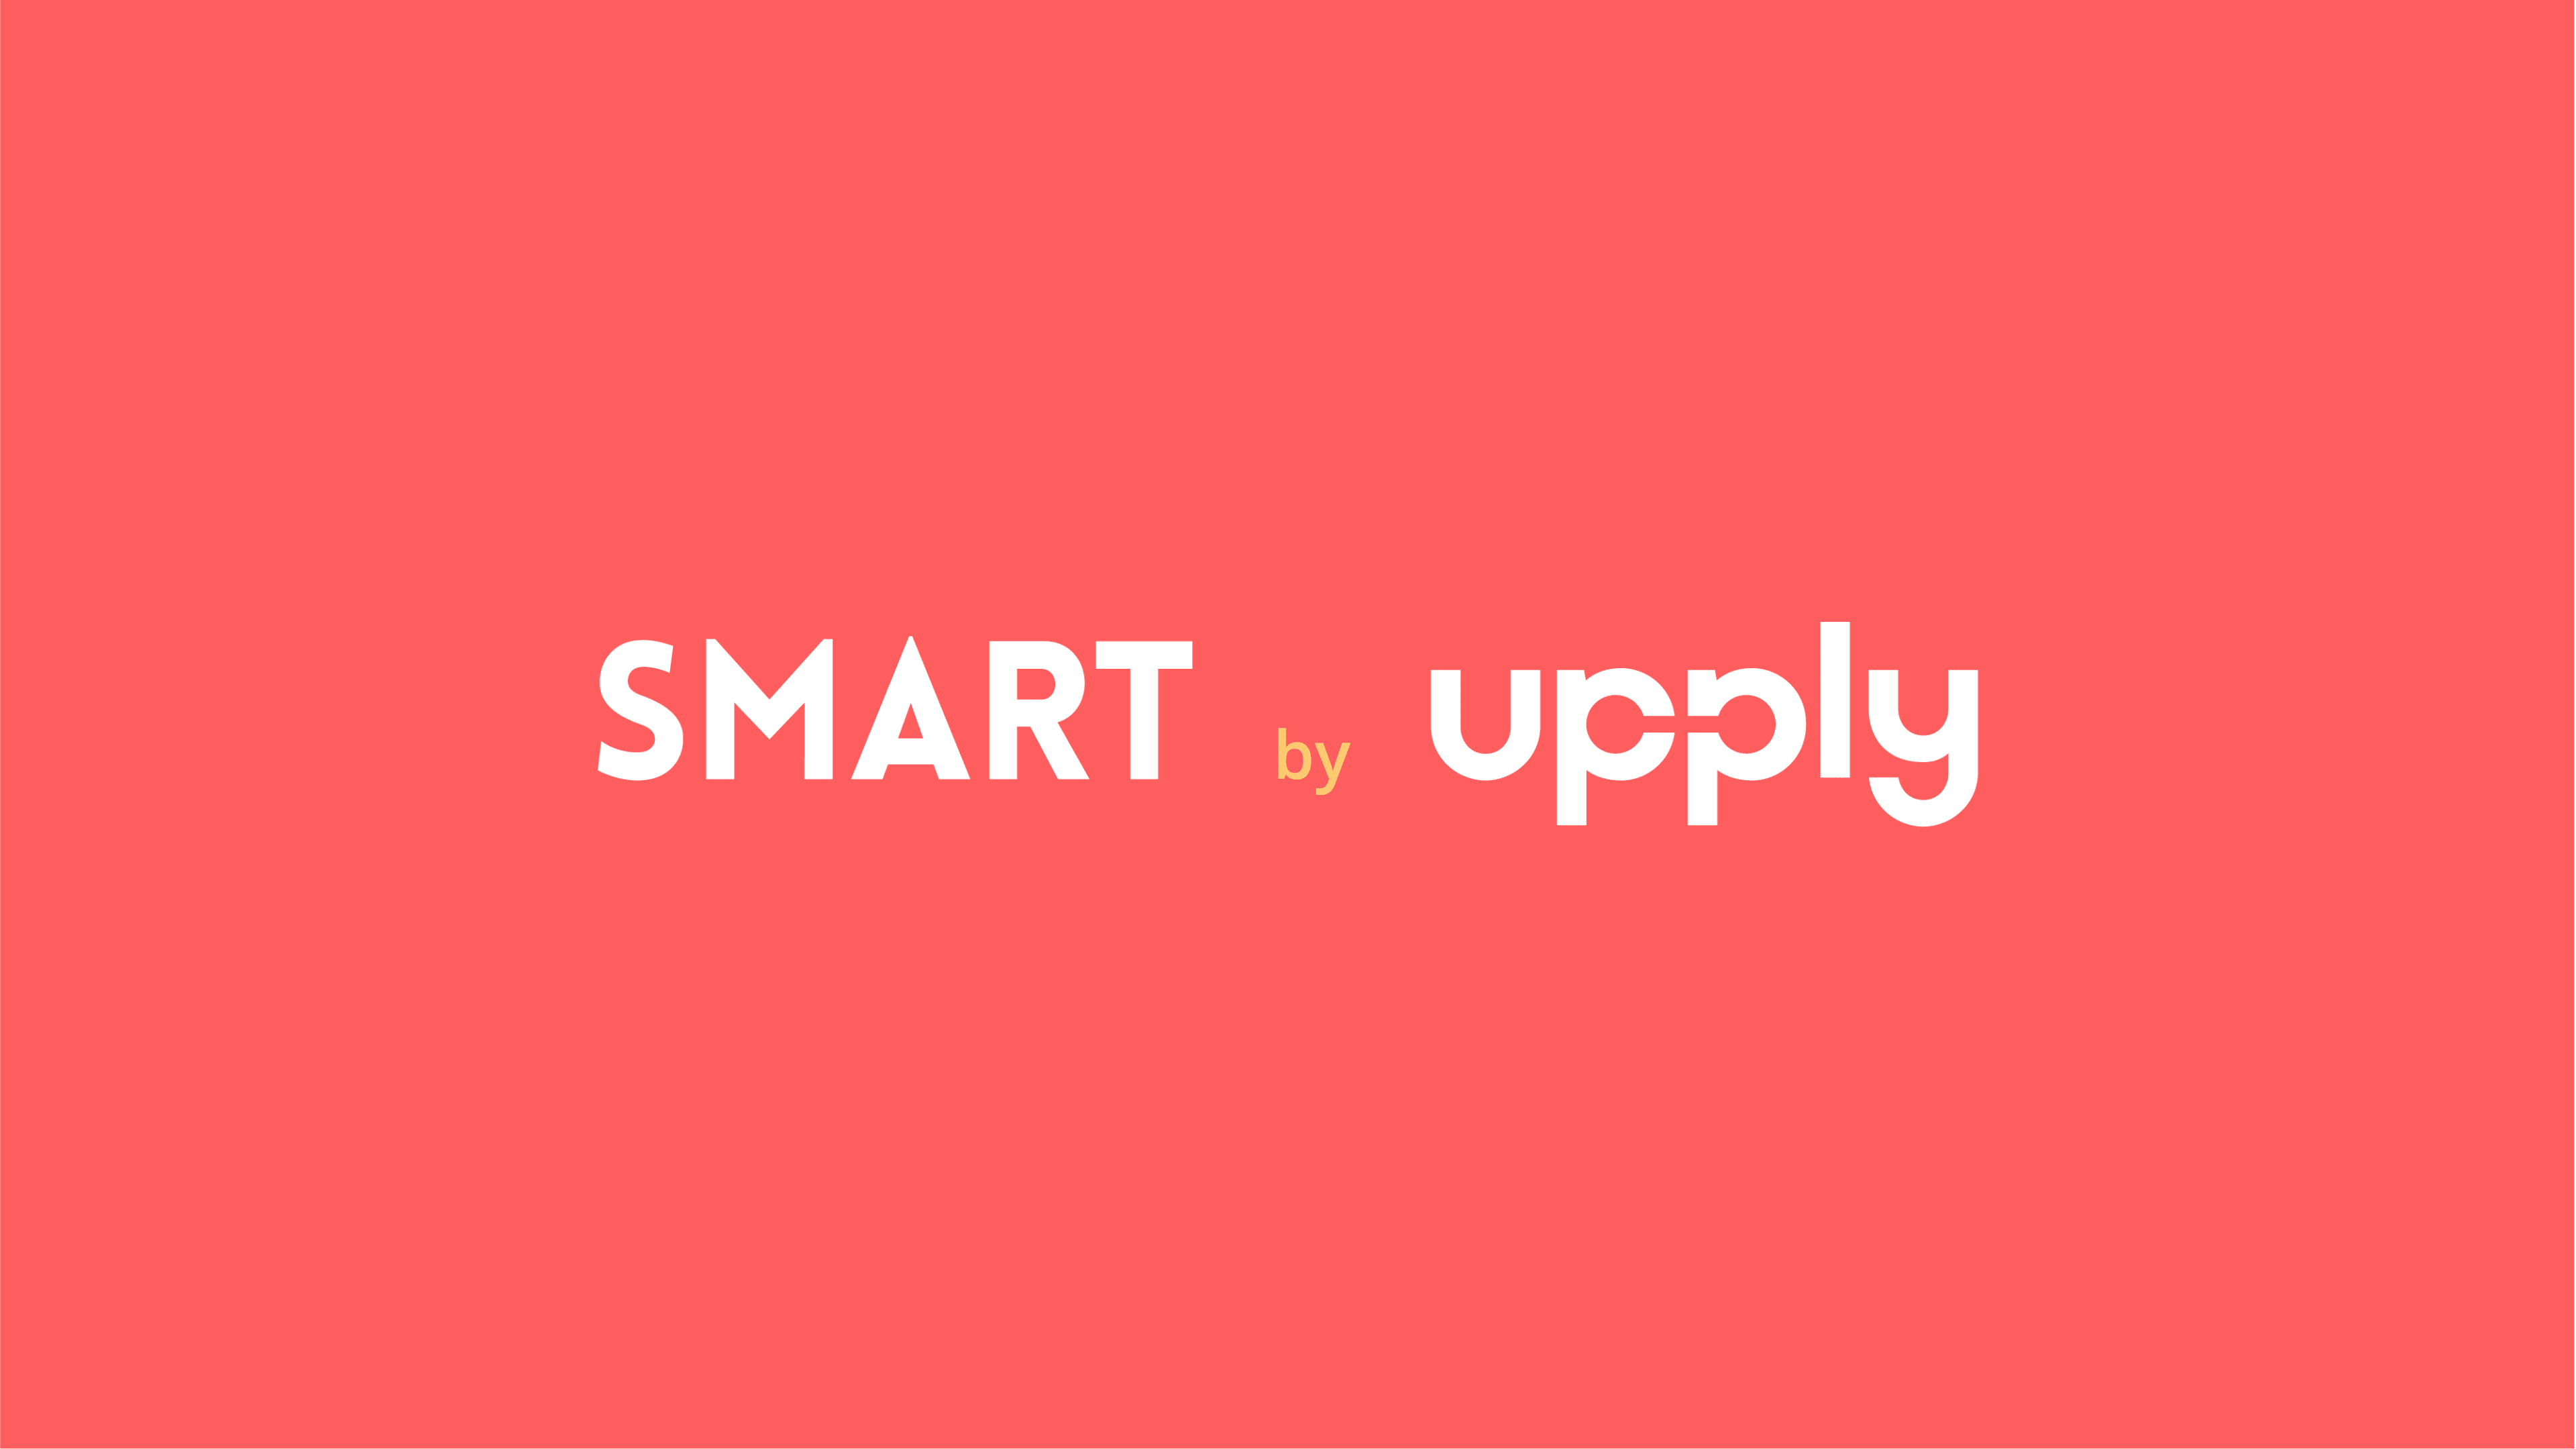 Upply SMART Storyboard V2 20